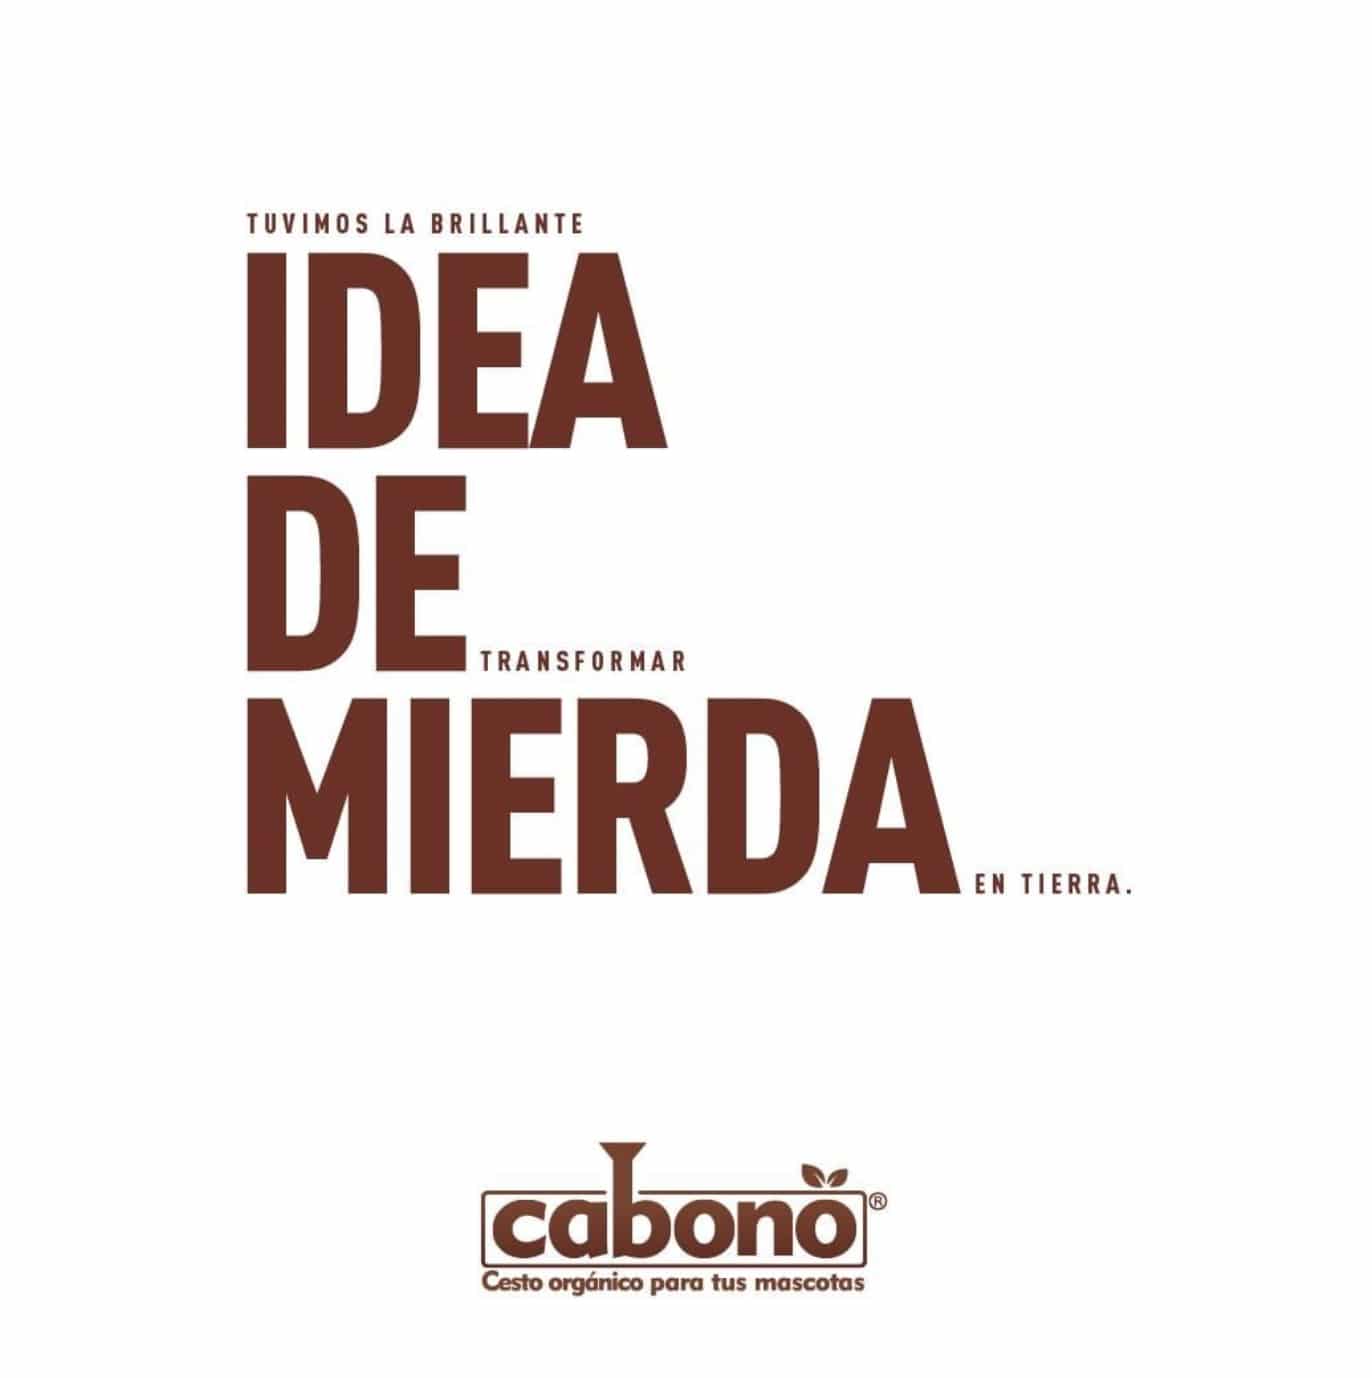 Ejemplo de diseño publicitario de Cabono